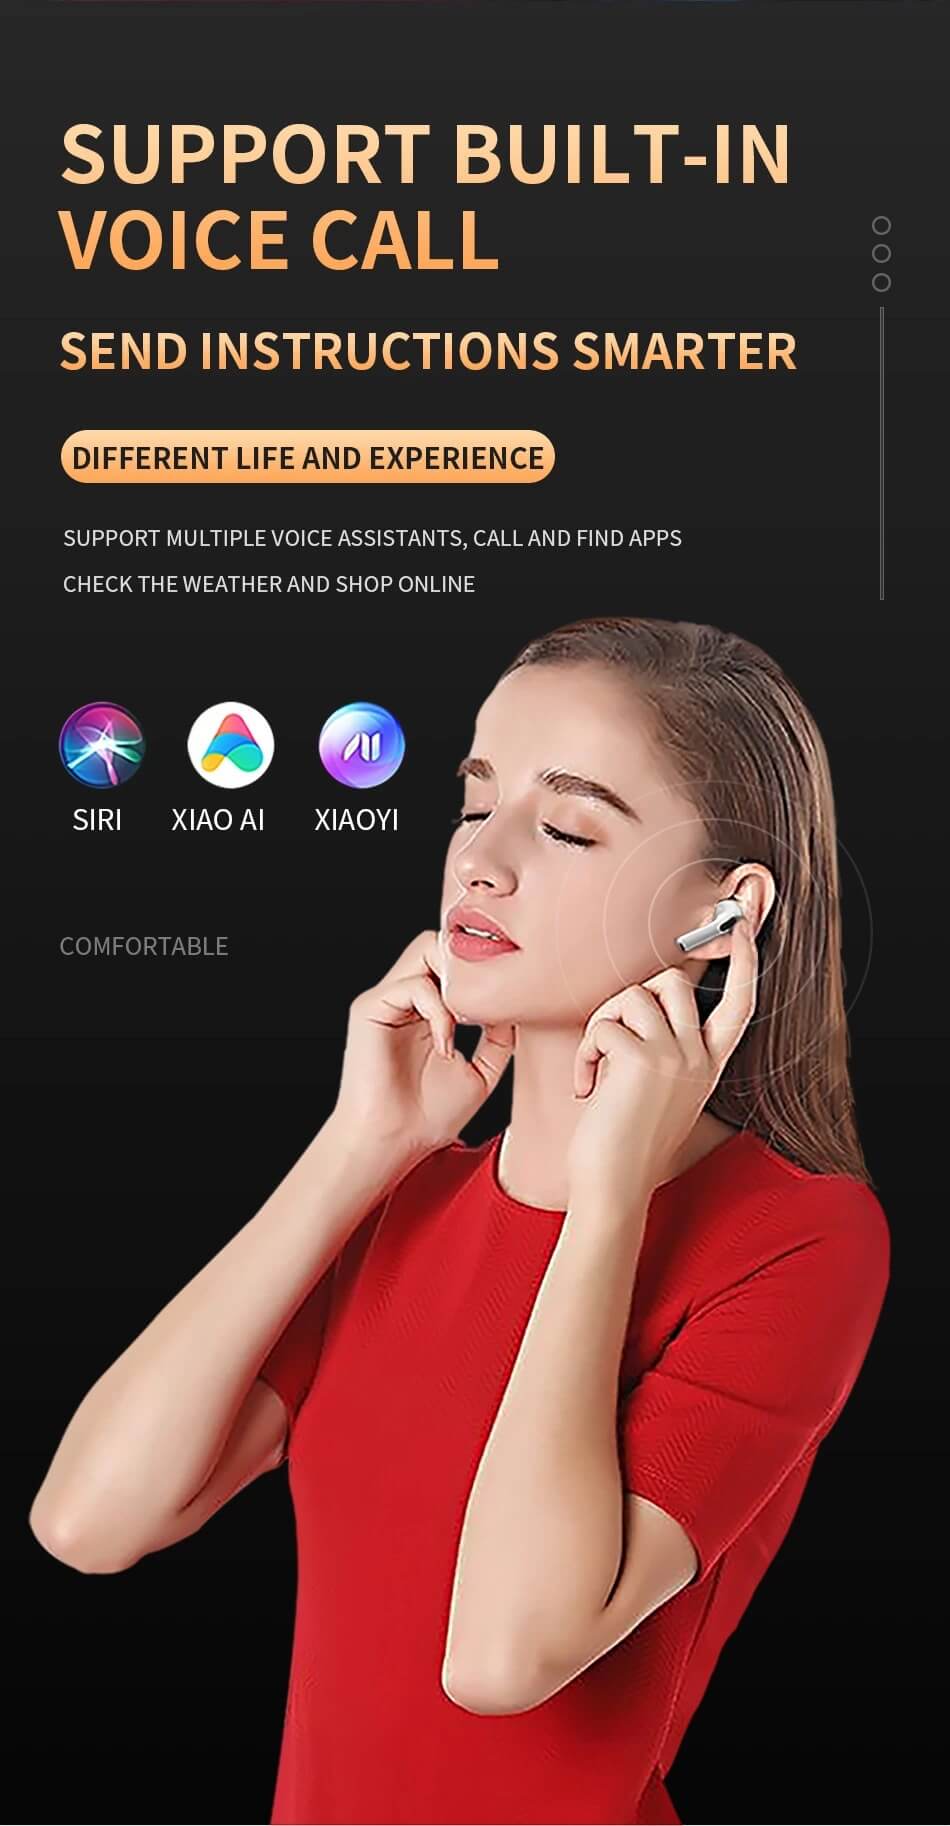 Pro 6 Wireless In-Ear Sports Headphones